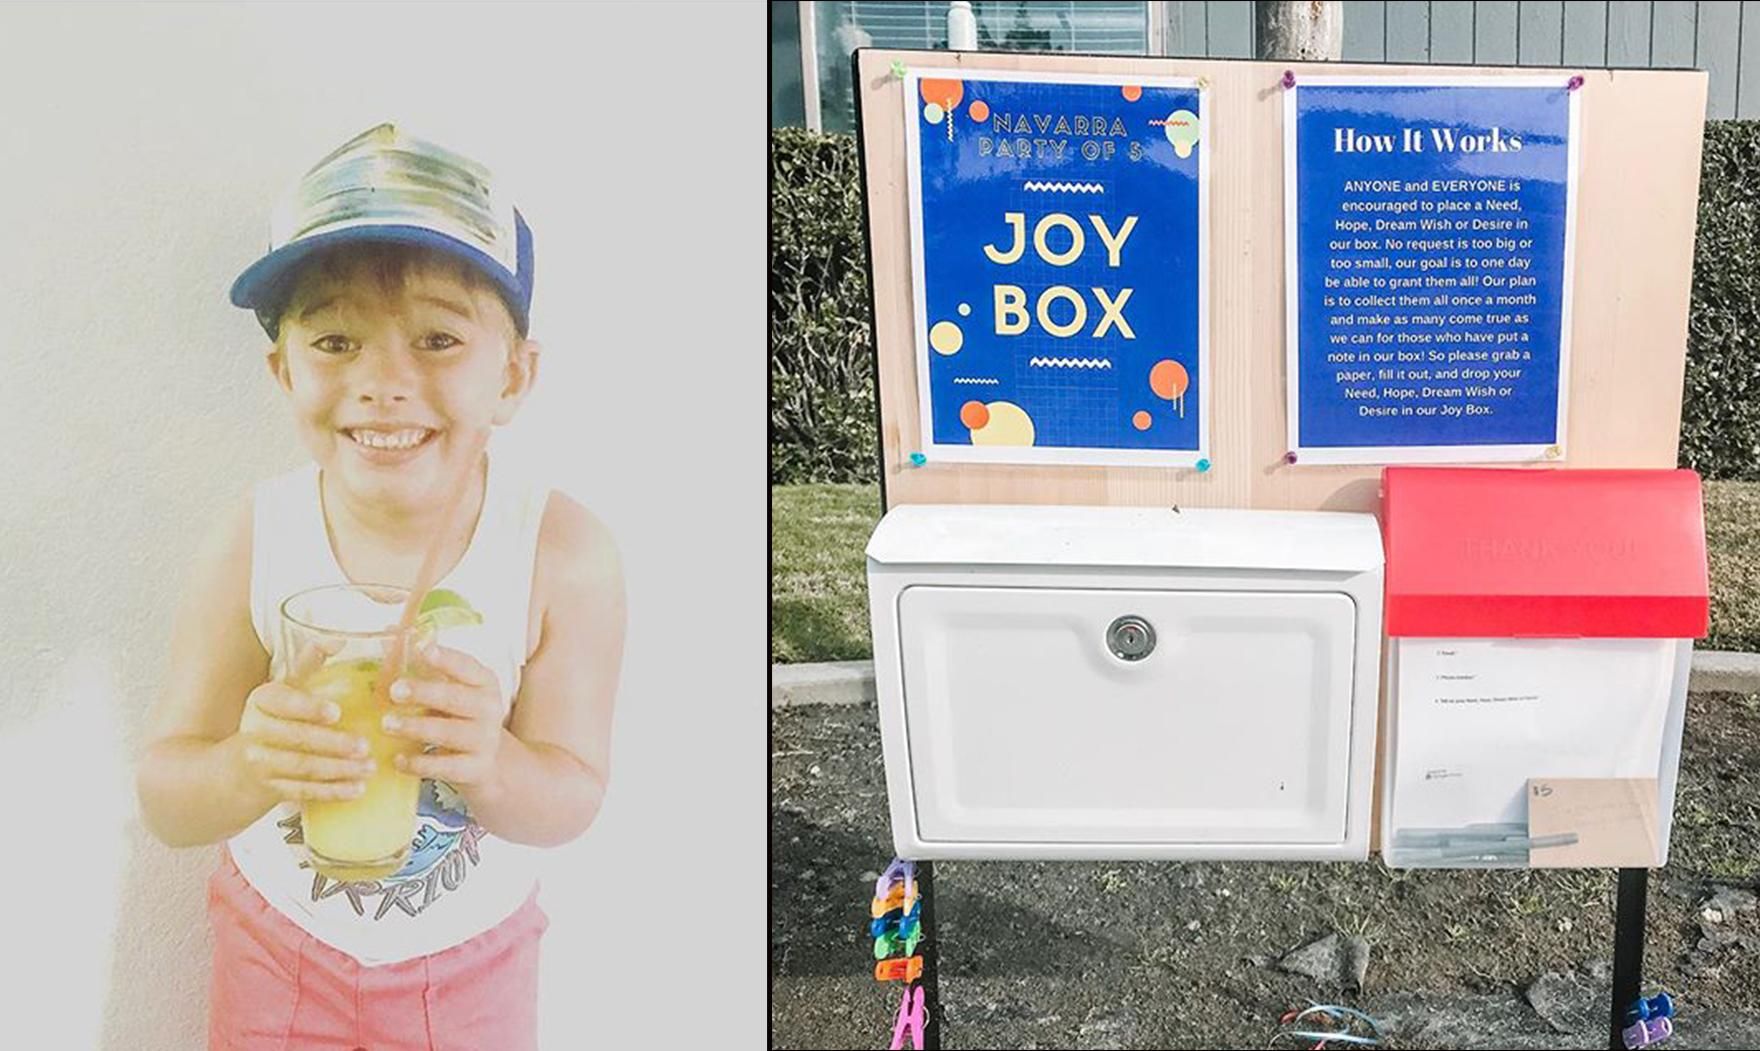 6-летний мальчик придумал "коробку грез", чтобы сделать людей счастливее